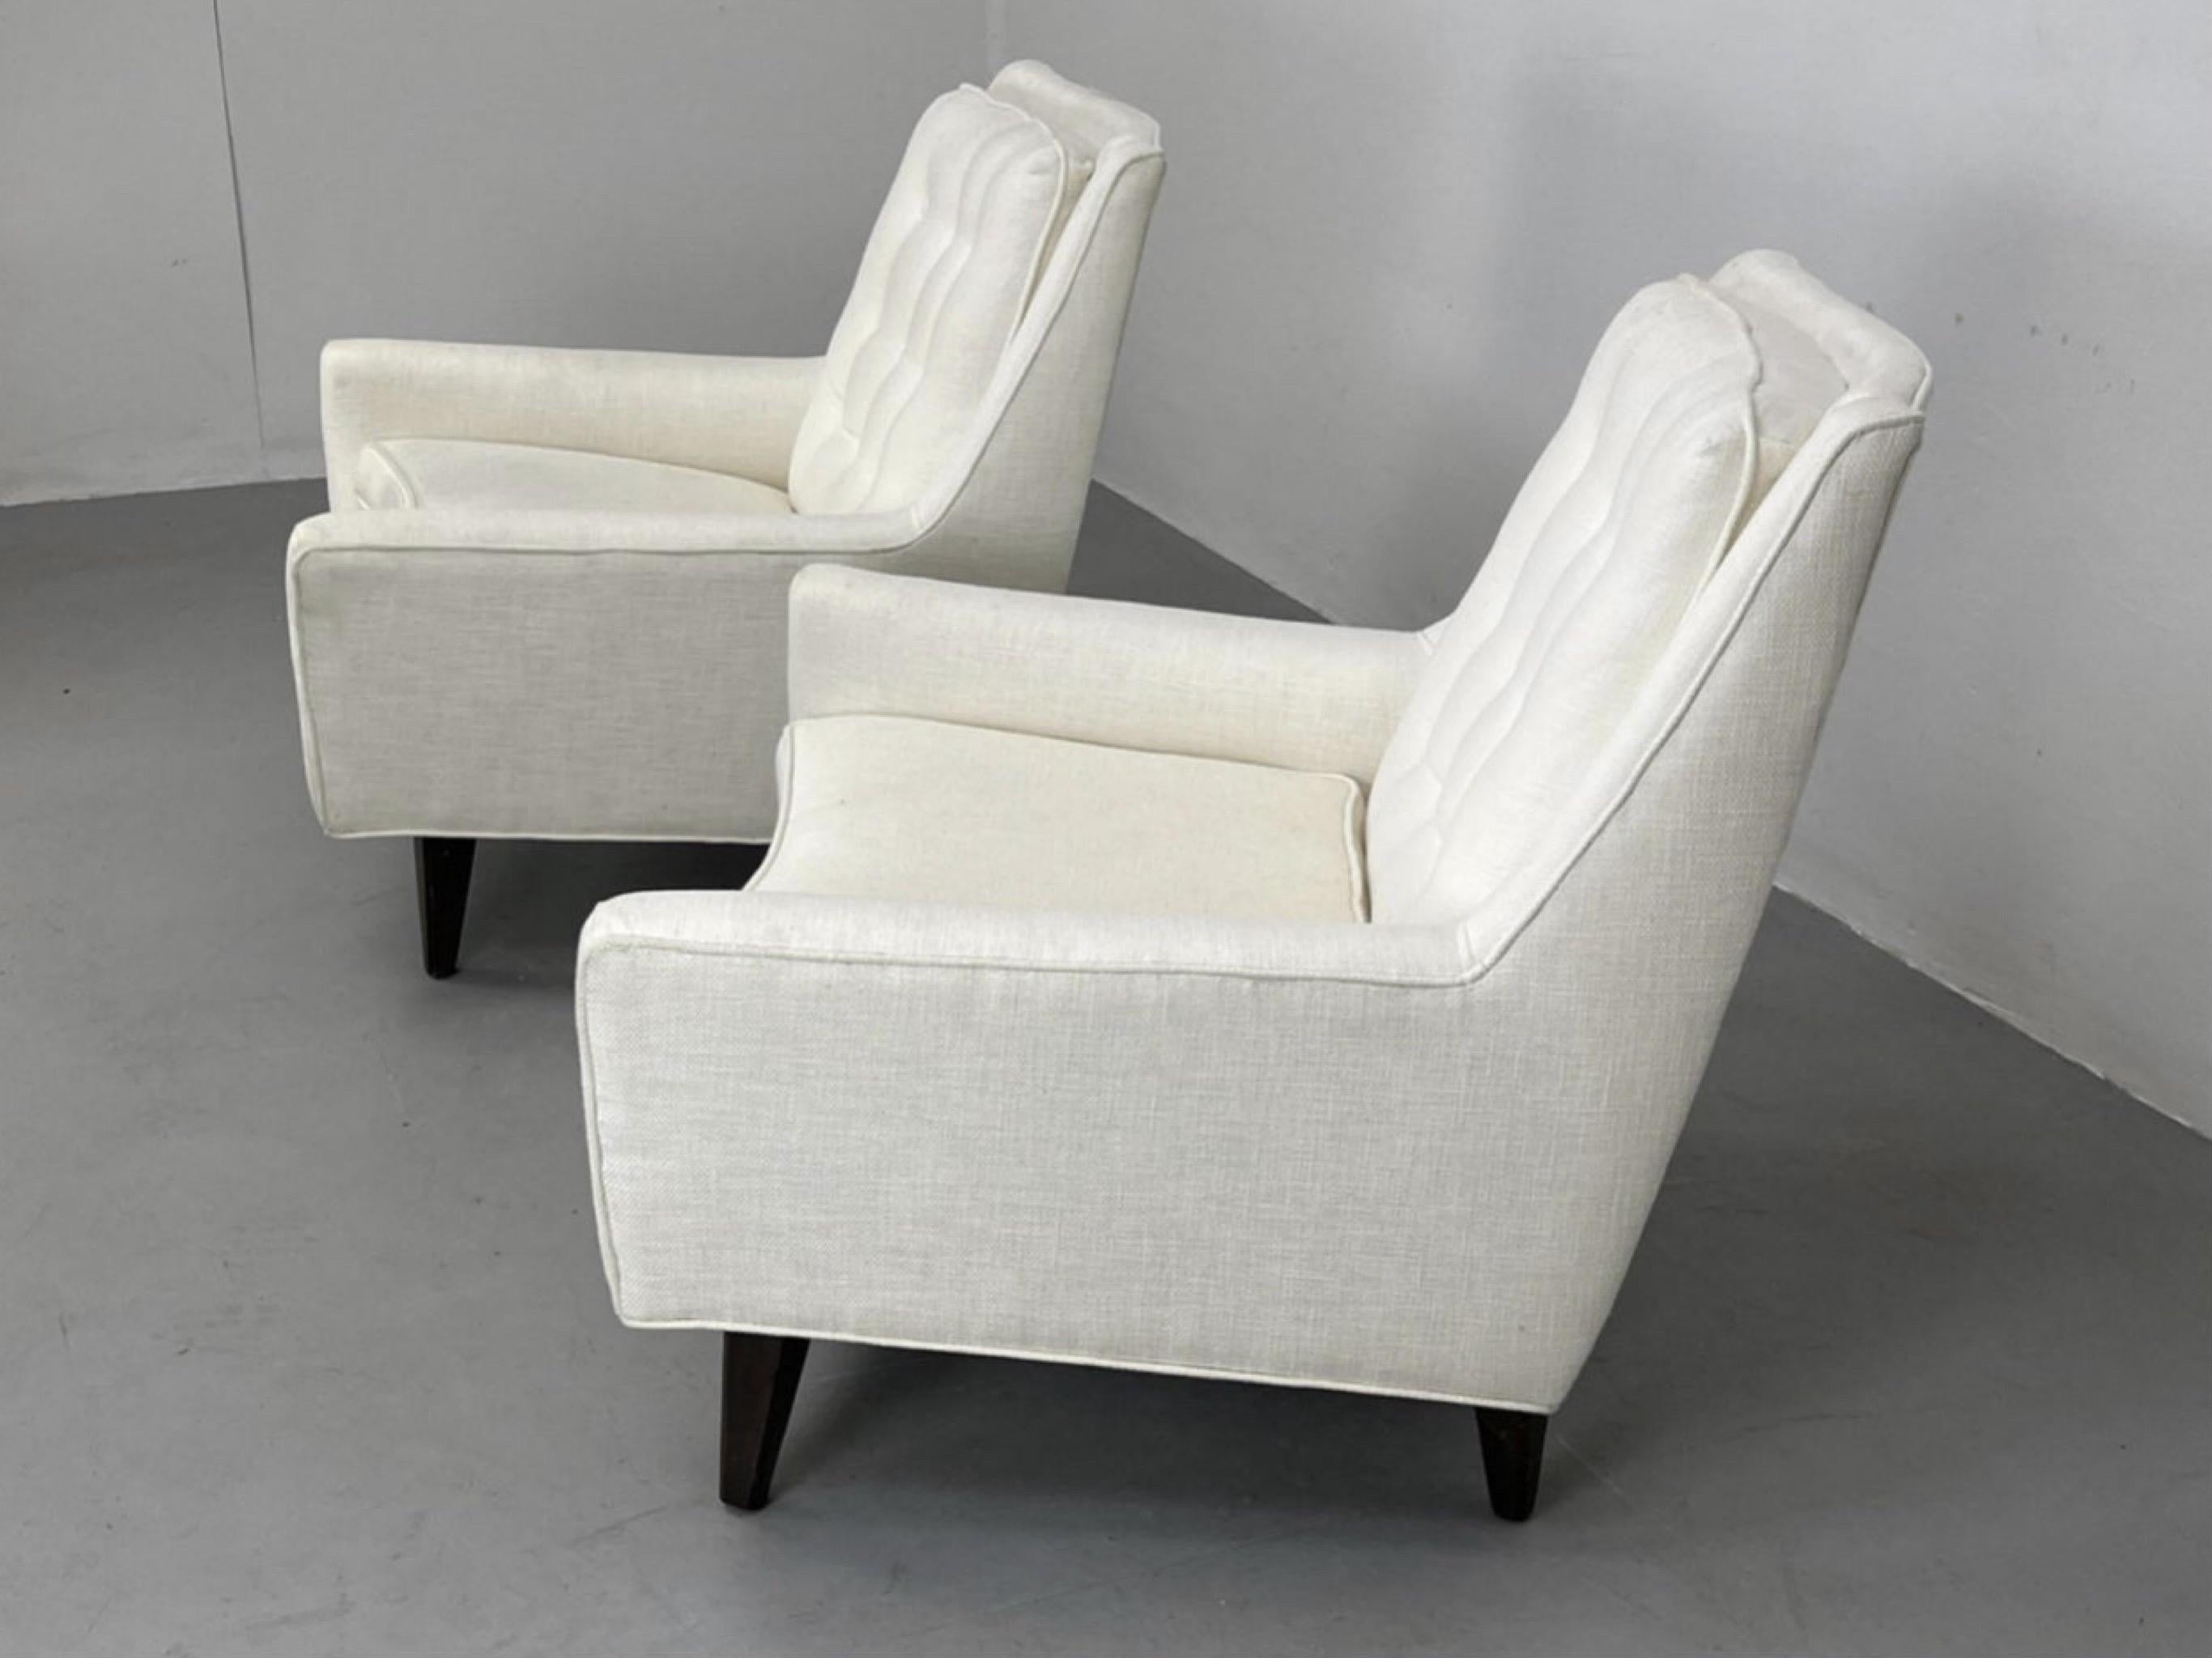 Edward Wormley zugeschriebene weiße gepolsterte Lounge-Stühle - ein Paar (Moderne der Mitte des Jahrhunderts)